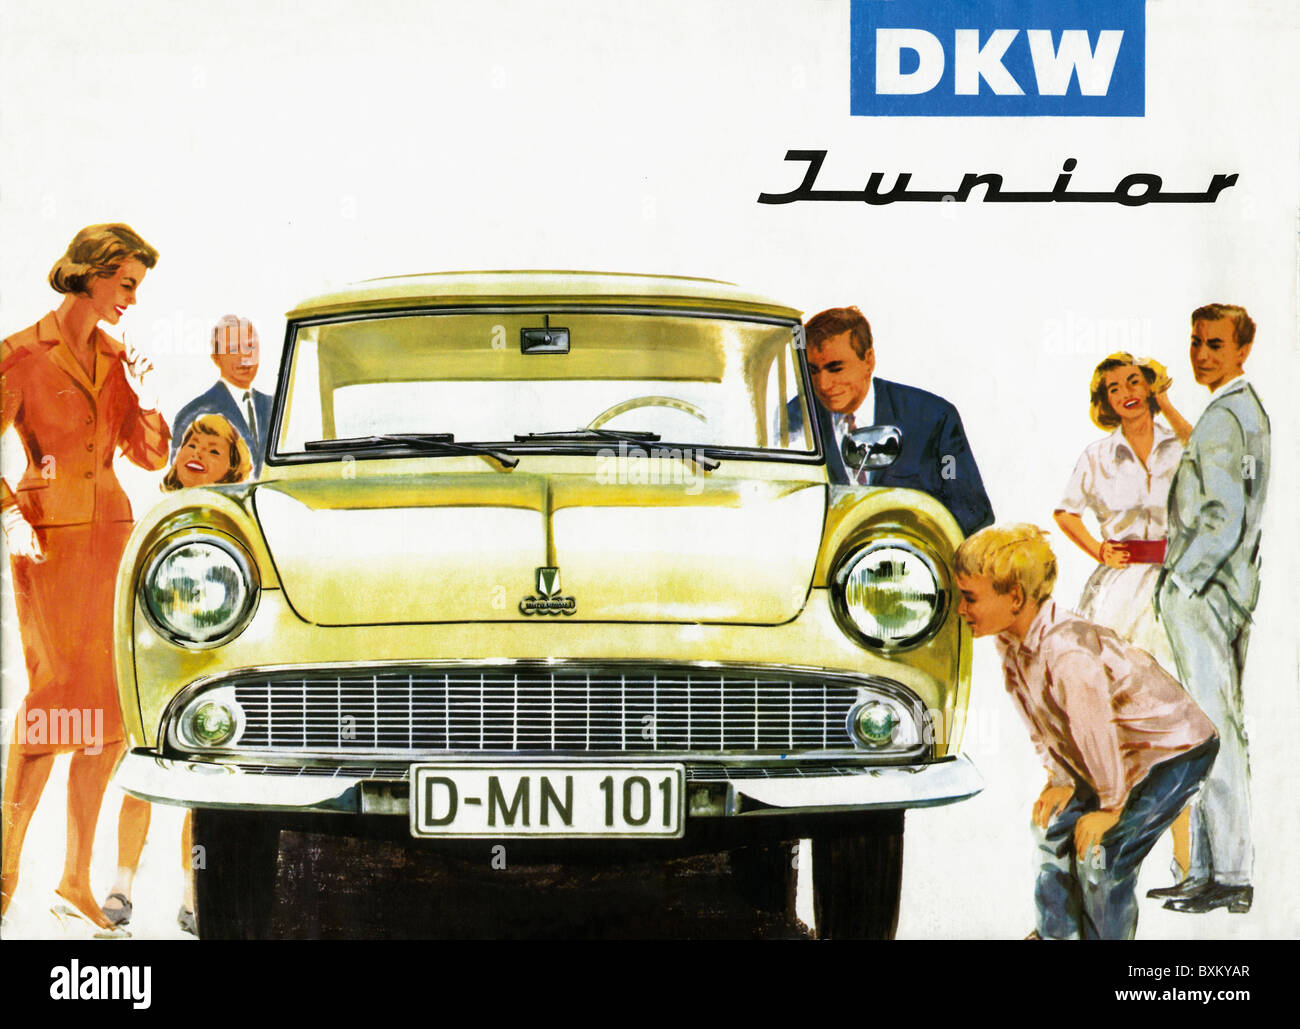 Trasporto / trasporto, auto, varianti di veicoli, DKW Junior, realizzato da Auto Union GmbH, famiglia che guarda la nuova auto, Germania, 1959, diritti aggiuntivi-clearences-non disponibile Foto Stock